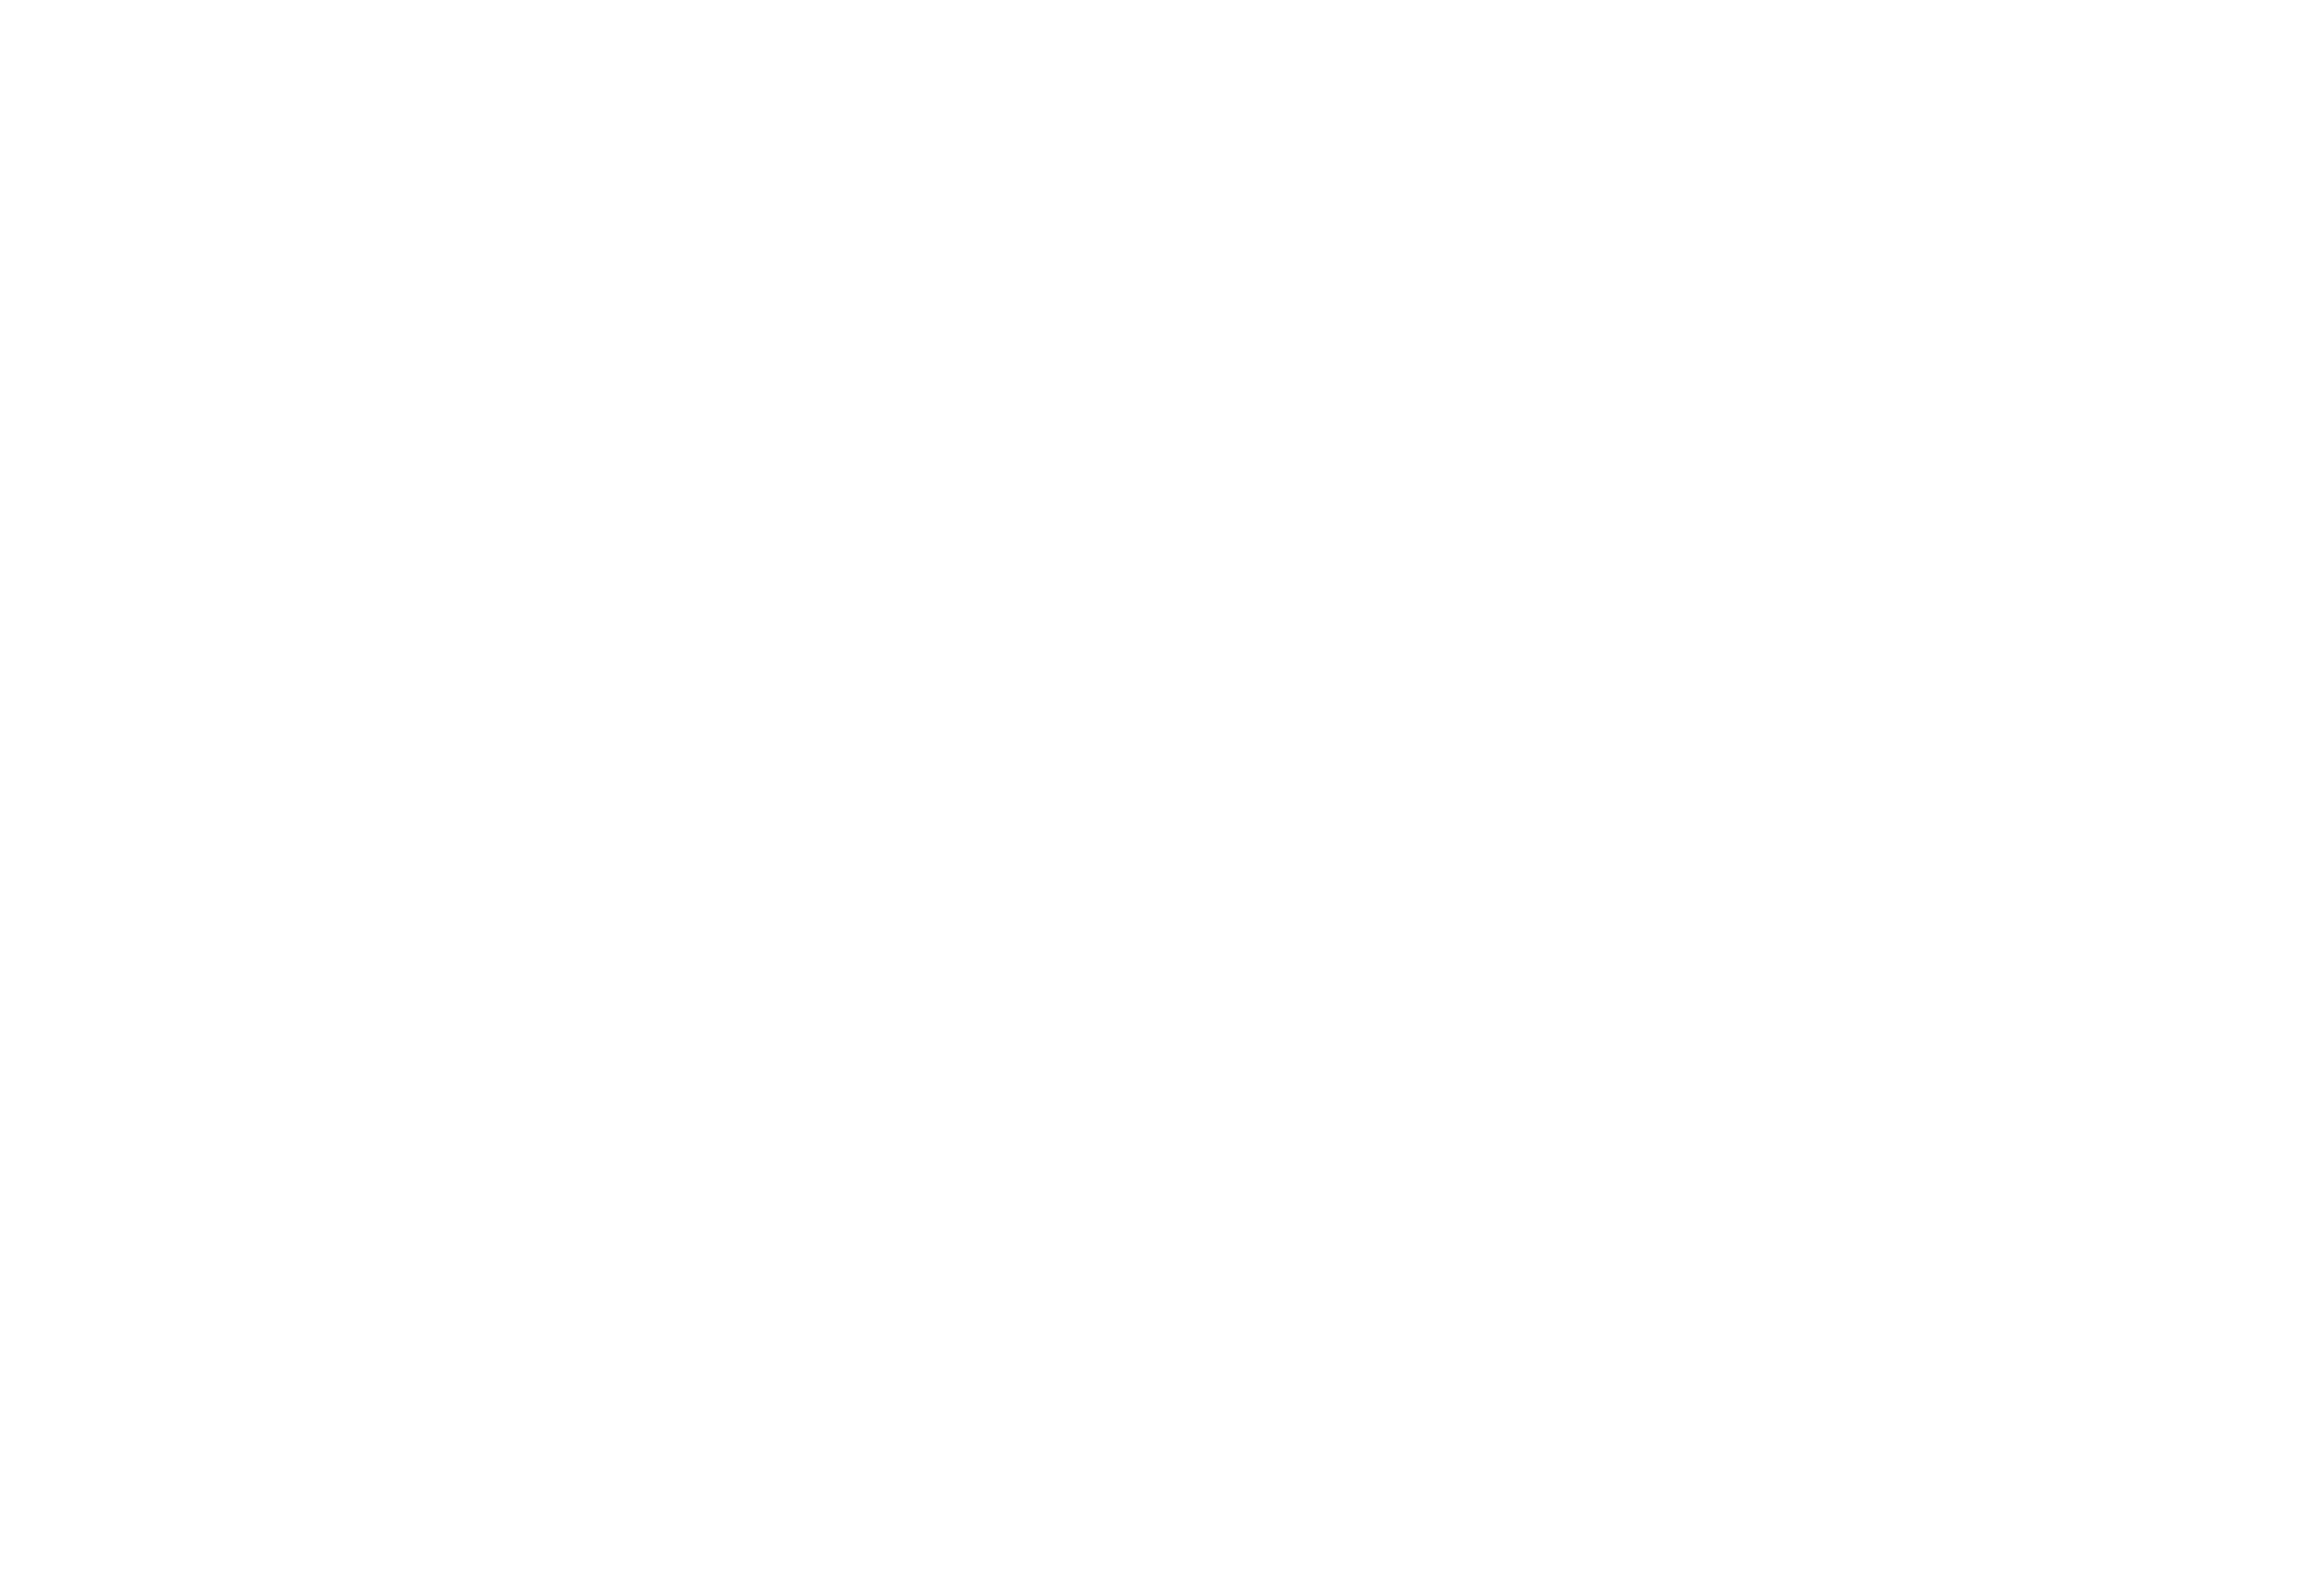 Alaska House of Yamaha